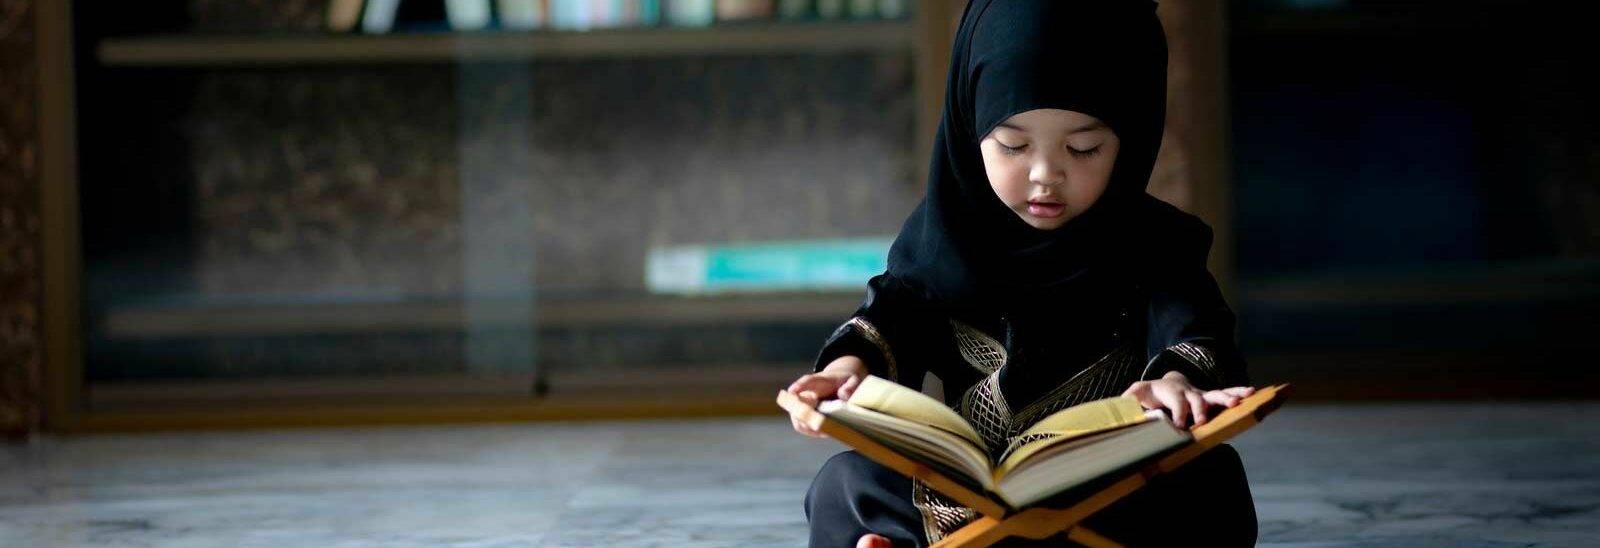 anak kecil membaca al qur'an